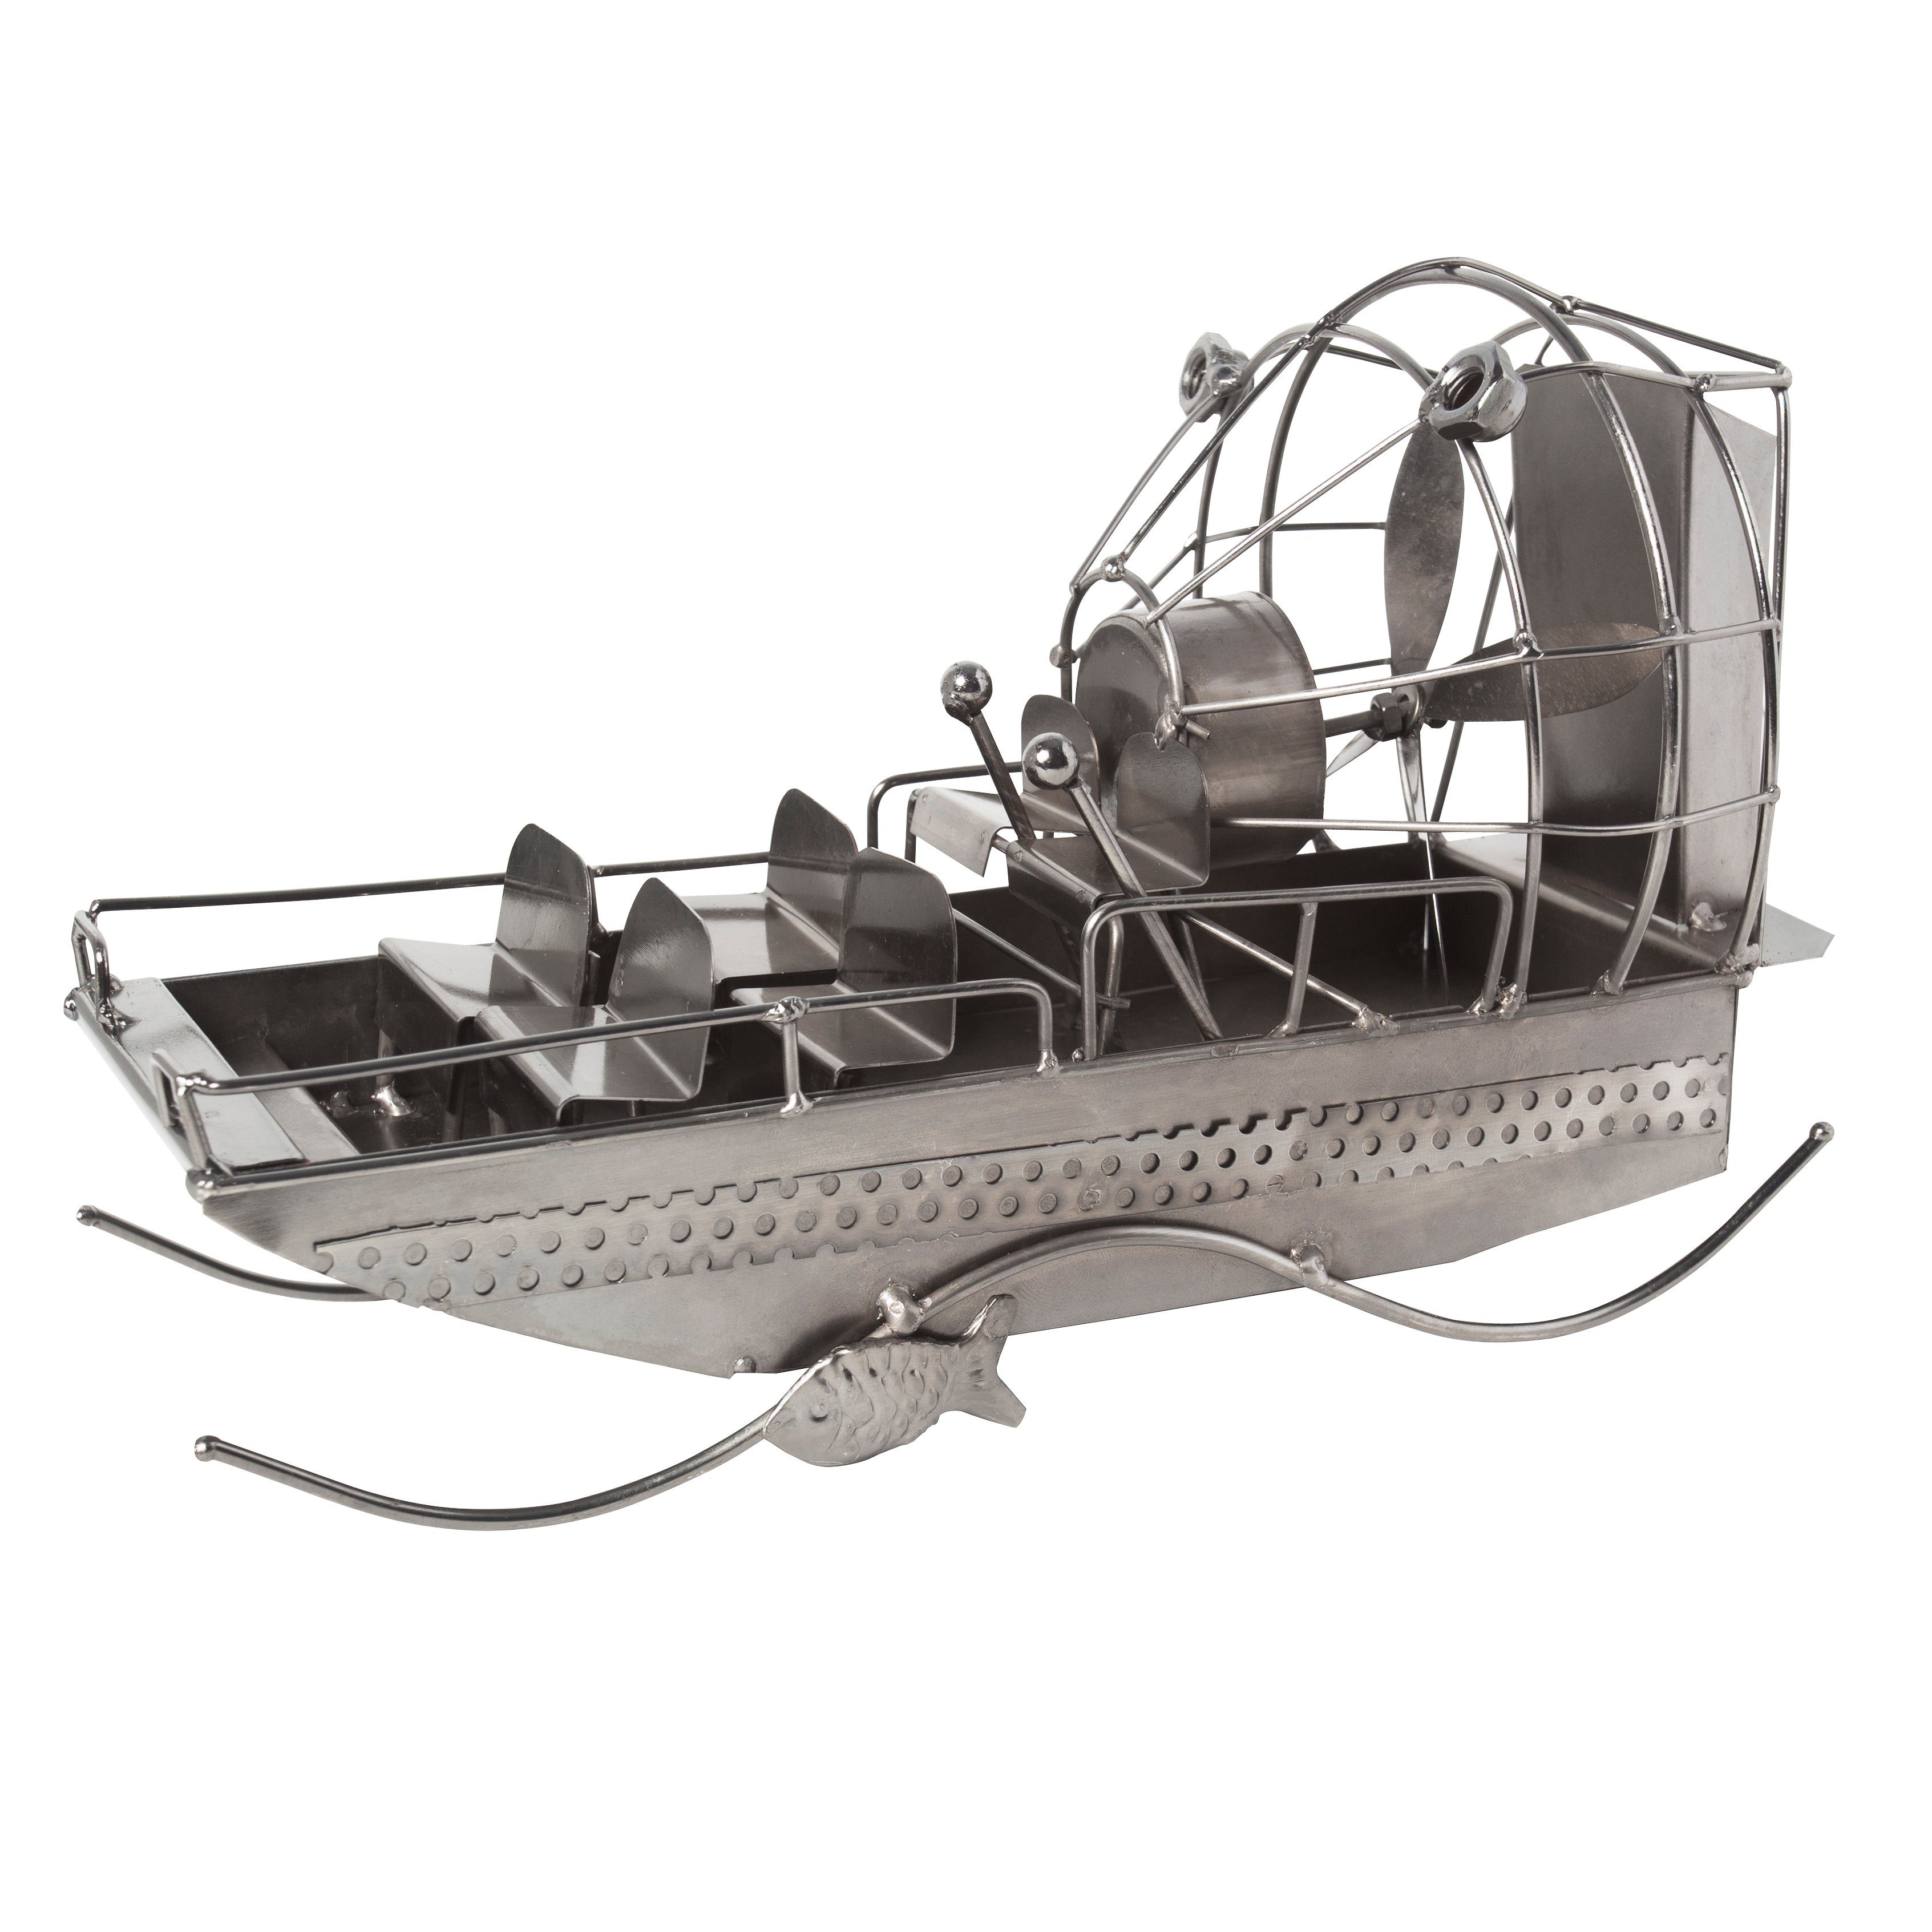 Airboat BRUBAKER Fans von Freizeitkapitäne Dekofigur für Geschenkfigur Sumpfboot, Propellerbootfahrer, Motorbooten kunstvolle alle Metallskulptur und